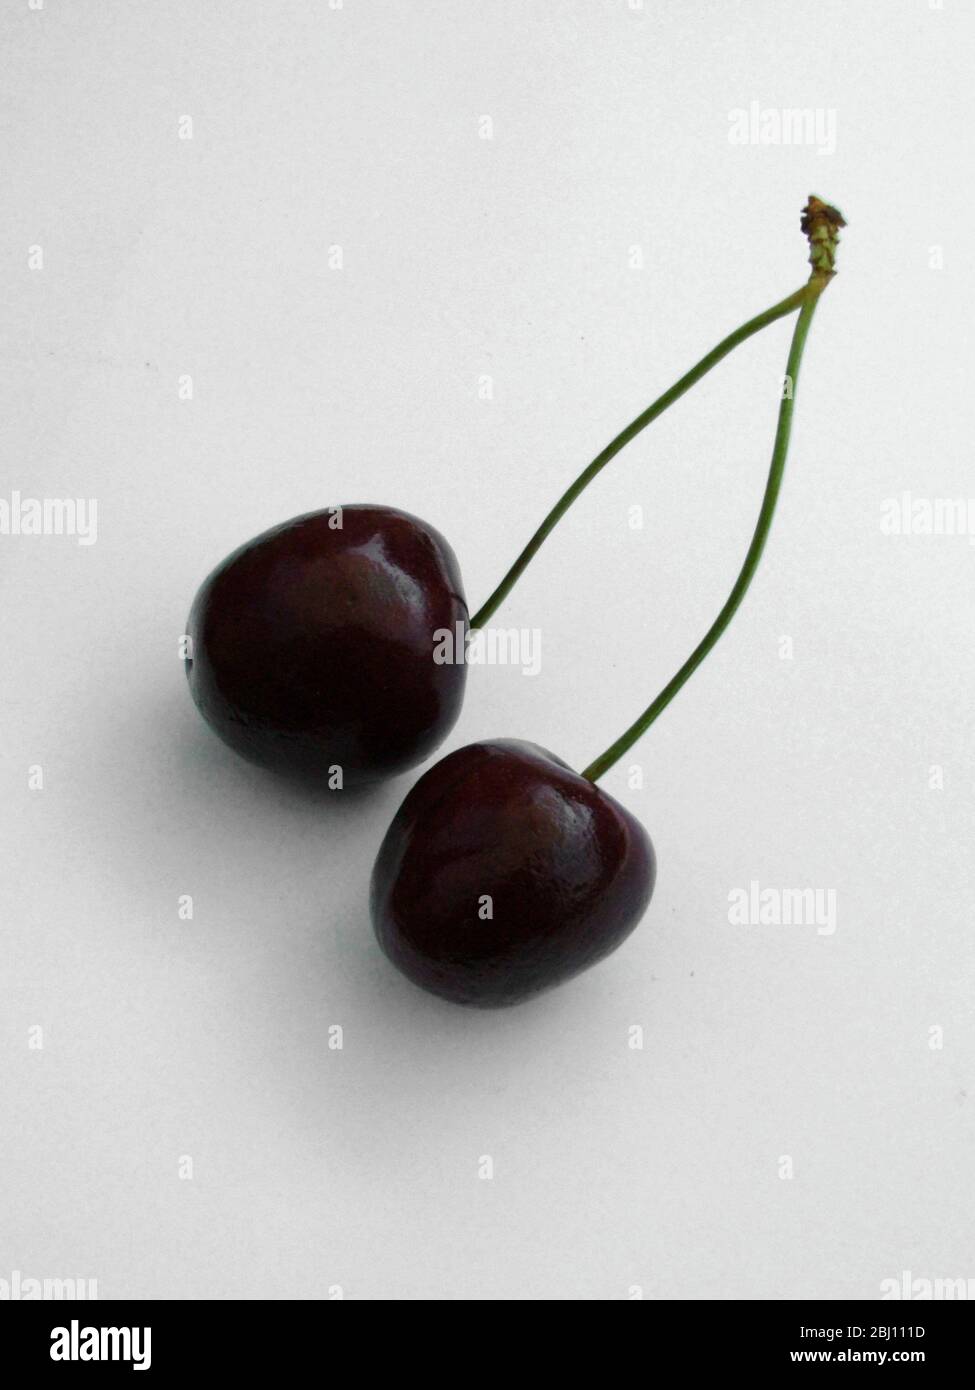 Pair of dark red cherries on white surface - Stock Photo